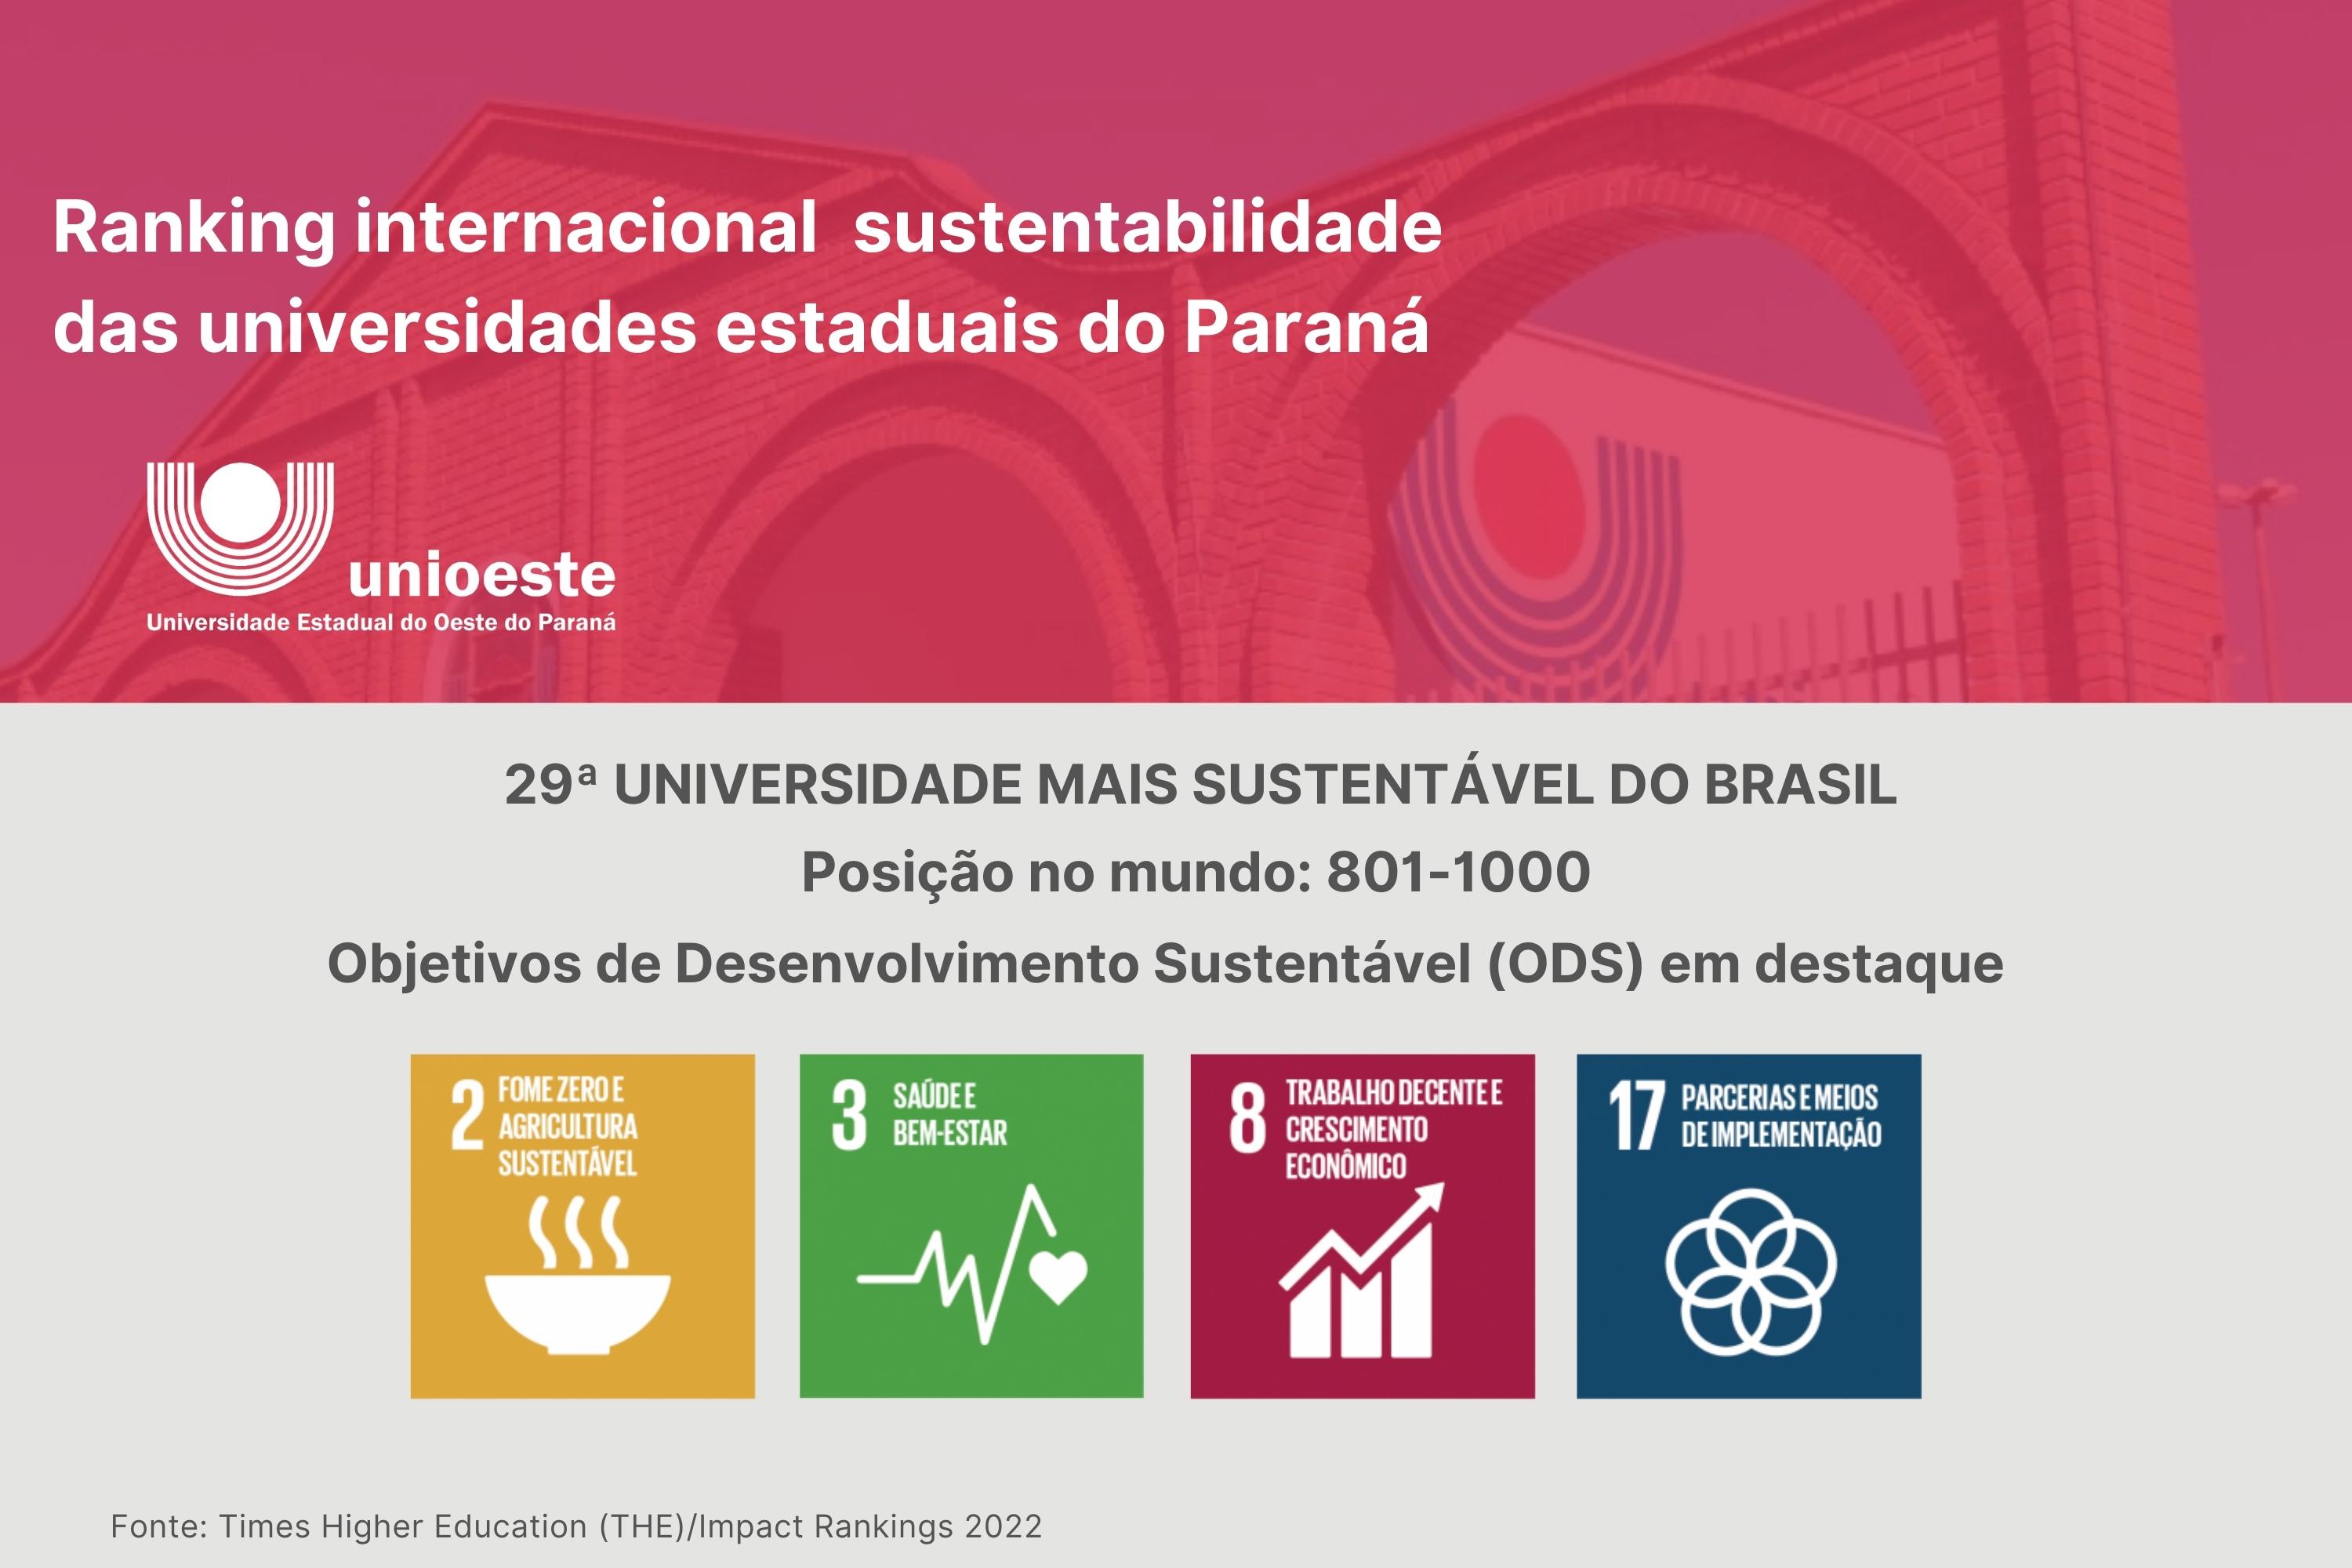 Ranking internacional posiciona a Unioeste como a 29ª universidade mais sustentável do Brasil